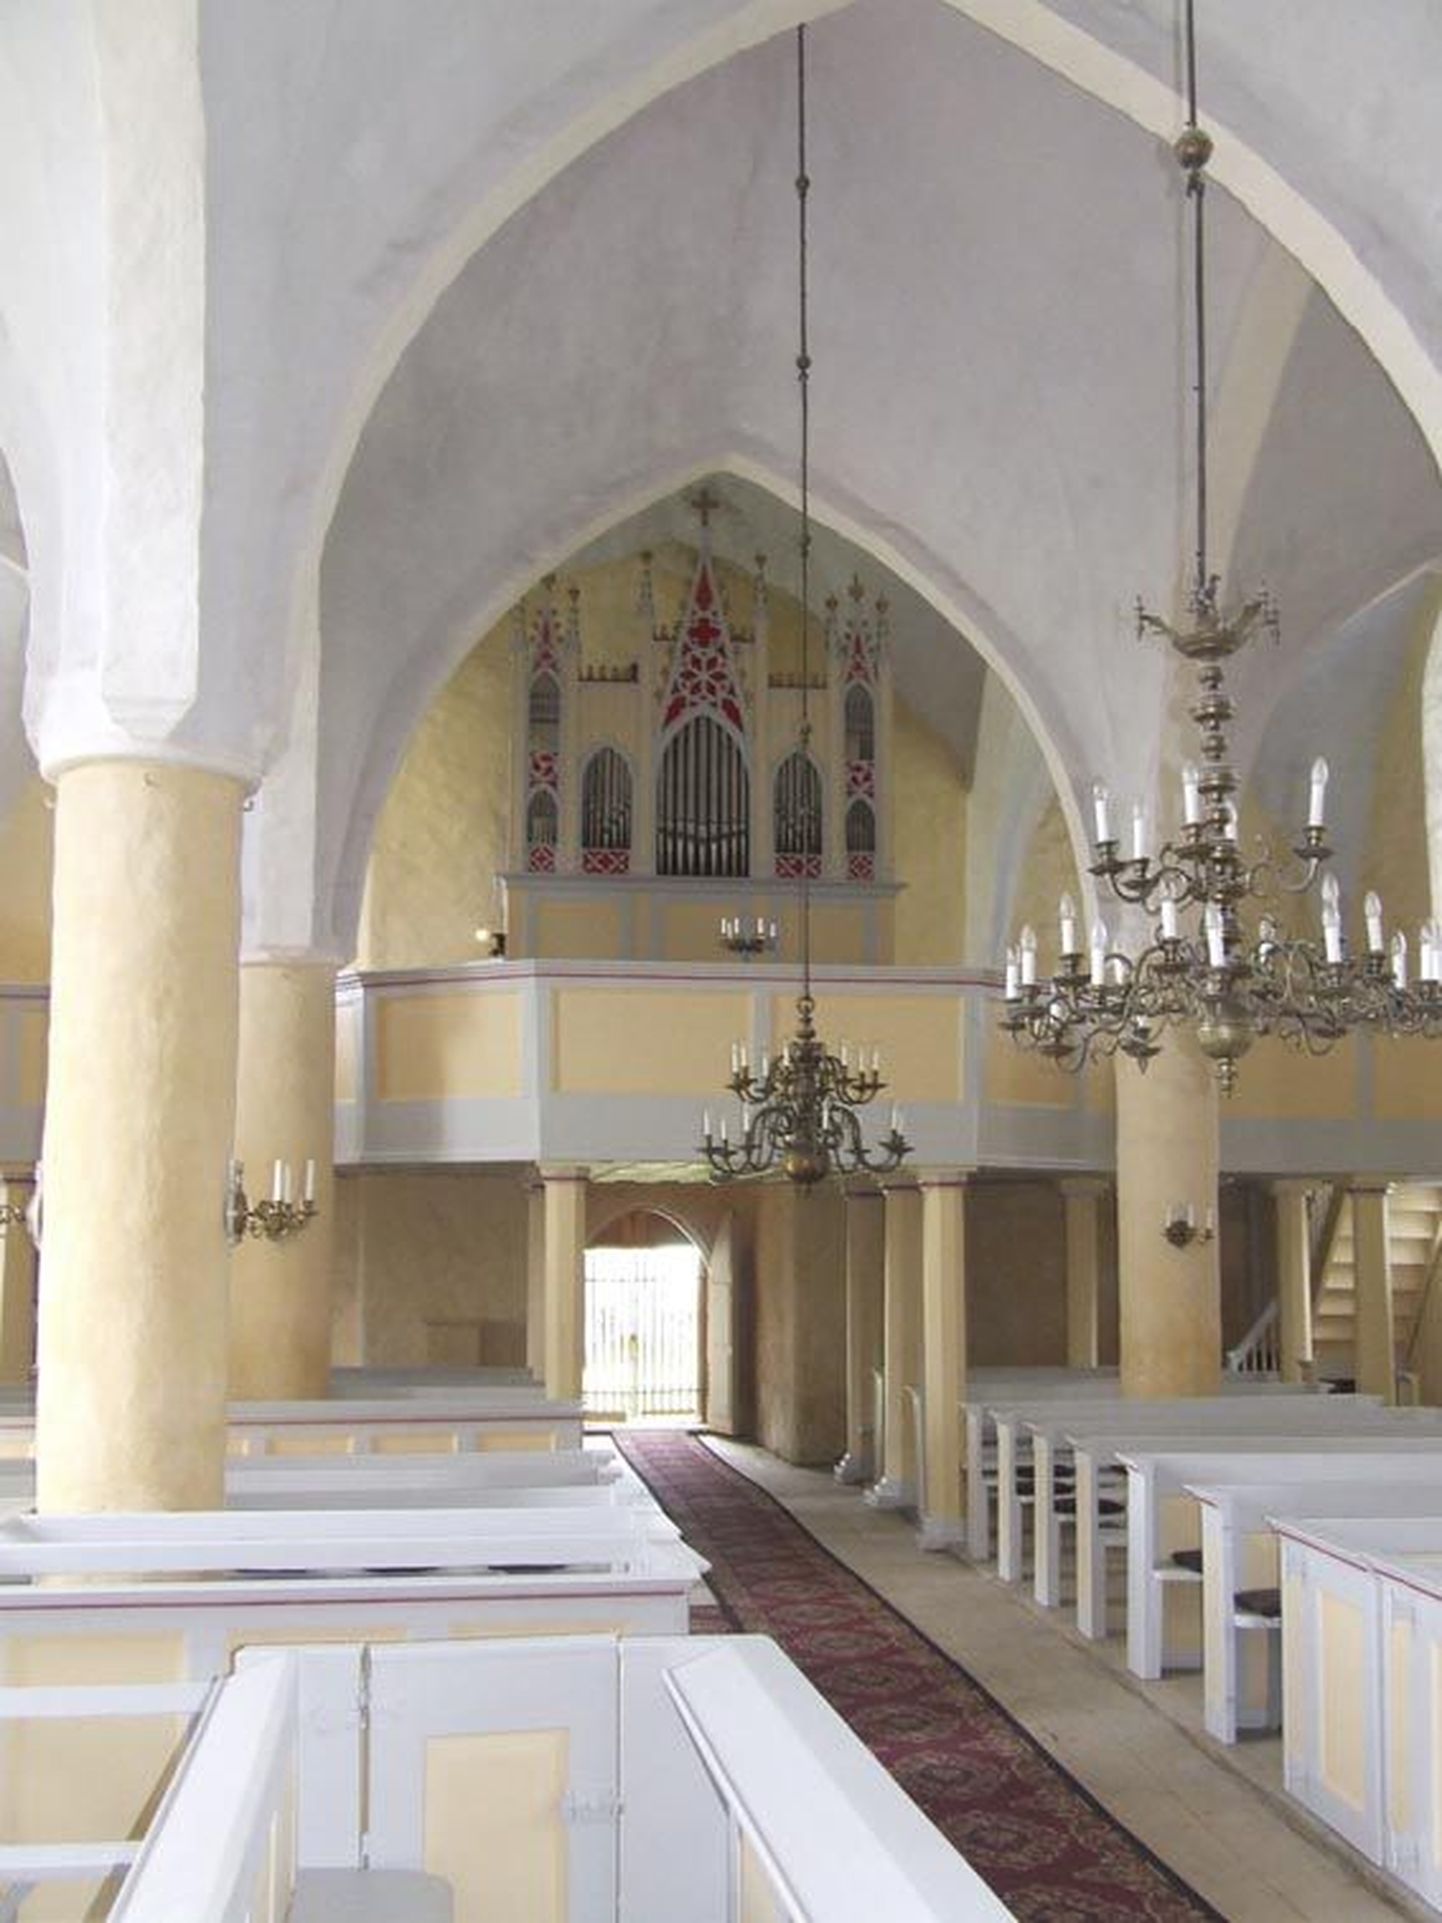 Väike-Maarja kiriku orelirõdul võib tutvuda väljapanekuga pilli restaureerimisloost.